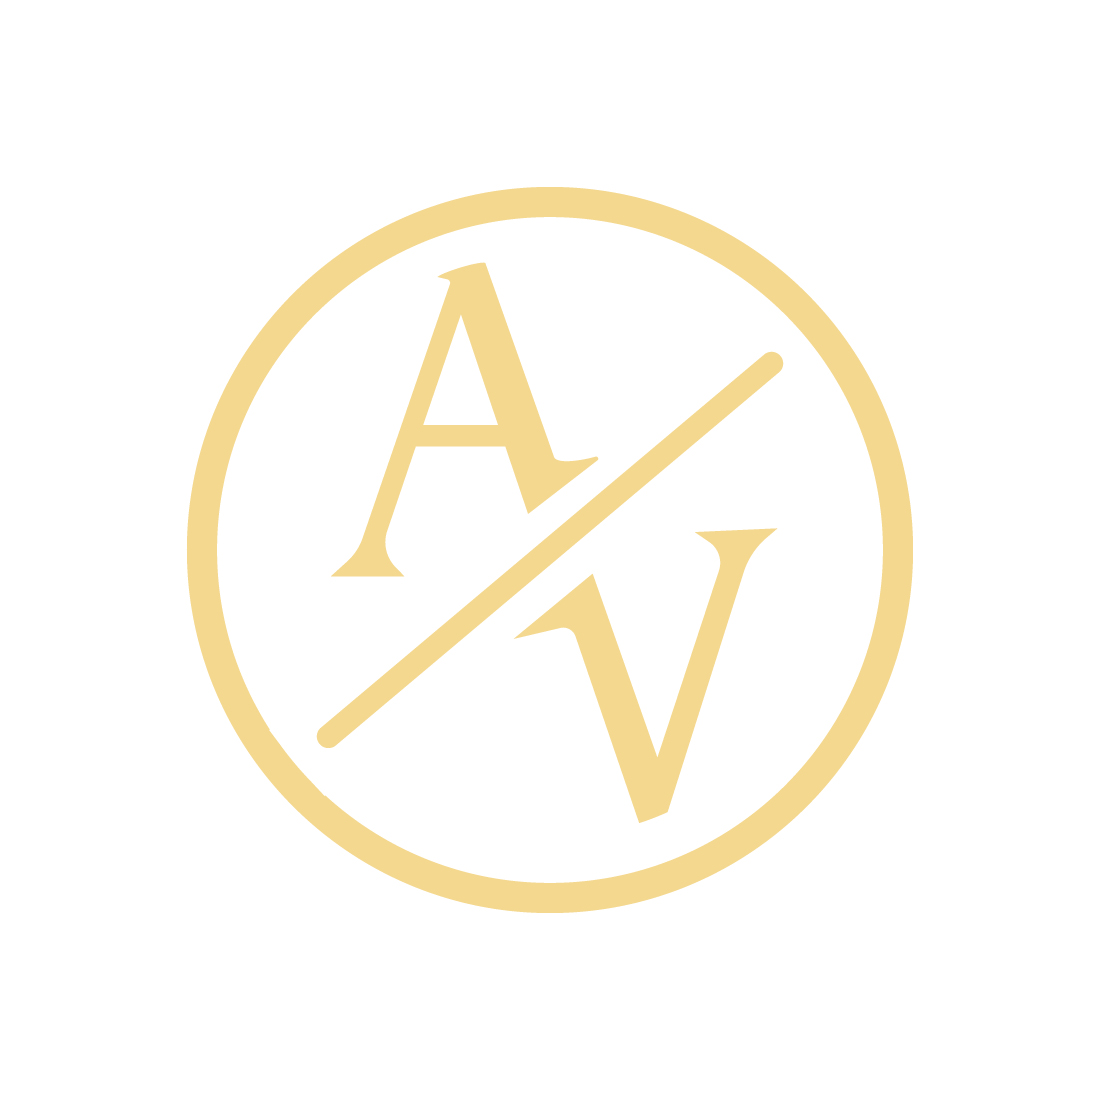 Luxury AV letters logo design vector images AV logo golden color best icon VA circle logo template design preview image.